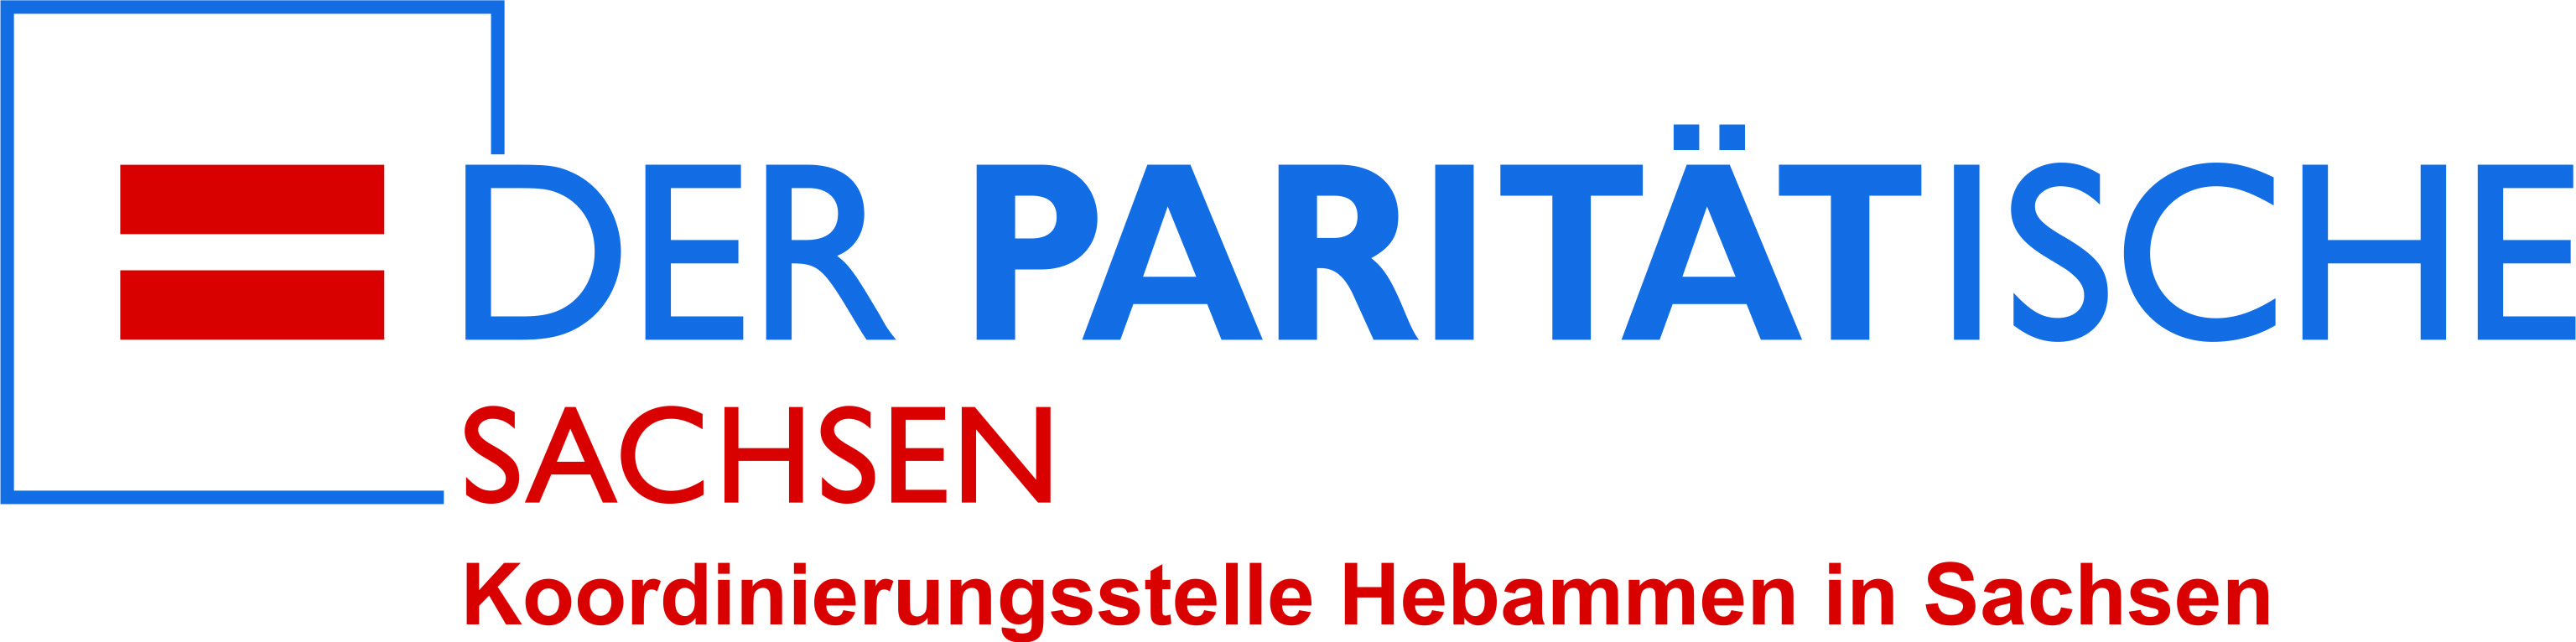 Hebammen in Sachsen  Logo